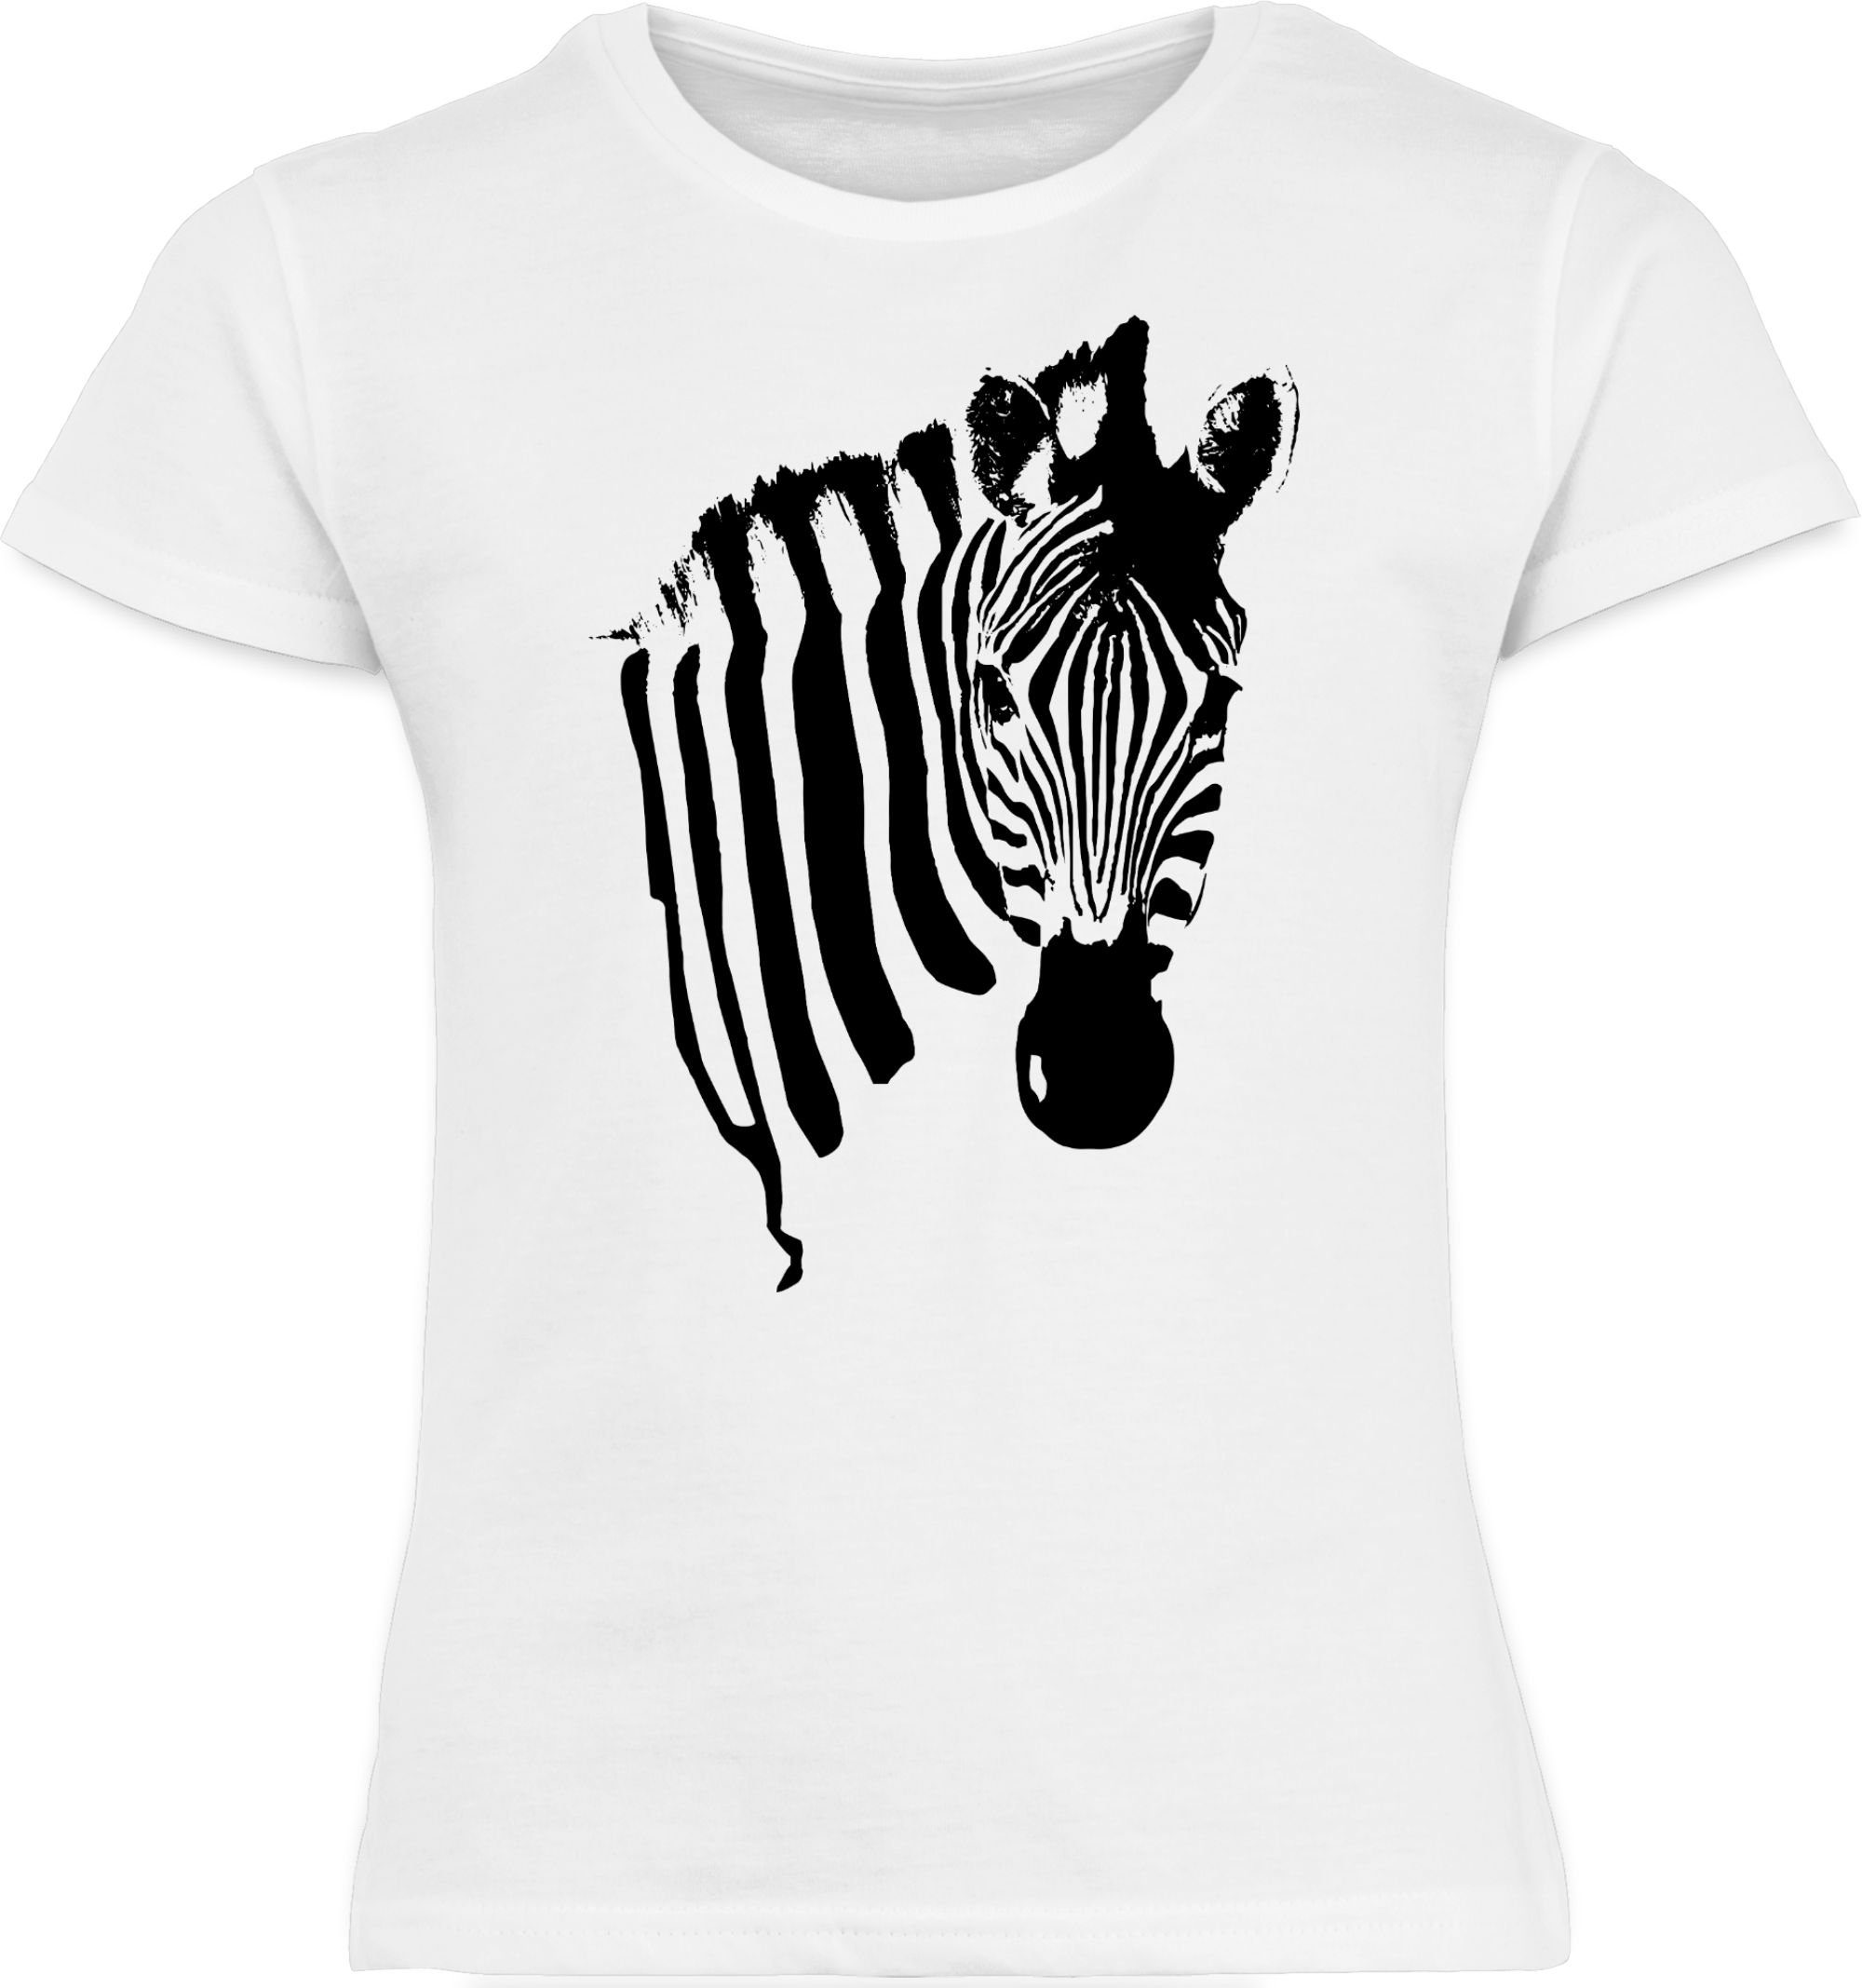 & Fasching Zebrastreifen - Karneval Safari 1 Shirtracer Weiß Afrika Zebra-Kostüm T-Shirt Zebramuster Tiermotiv Zebra